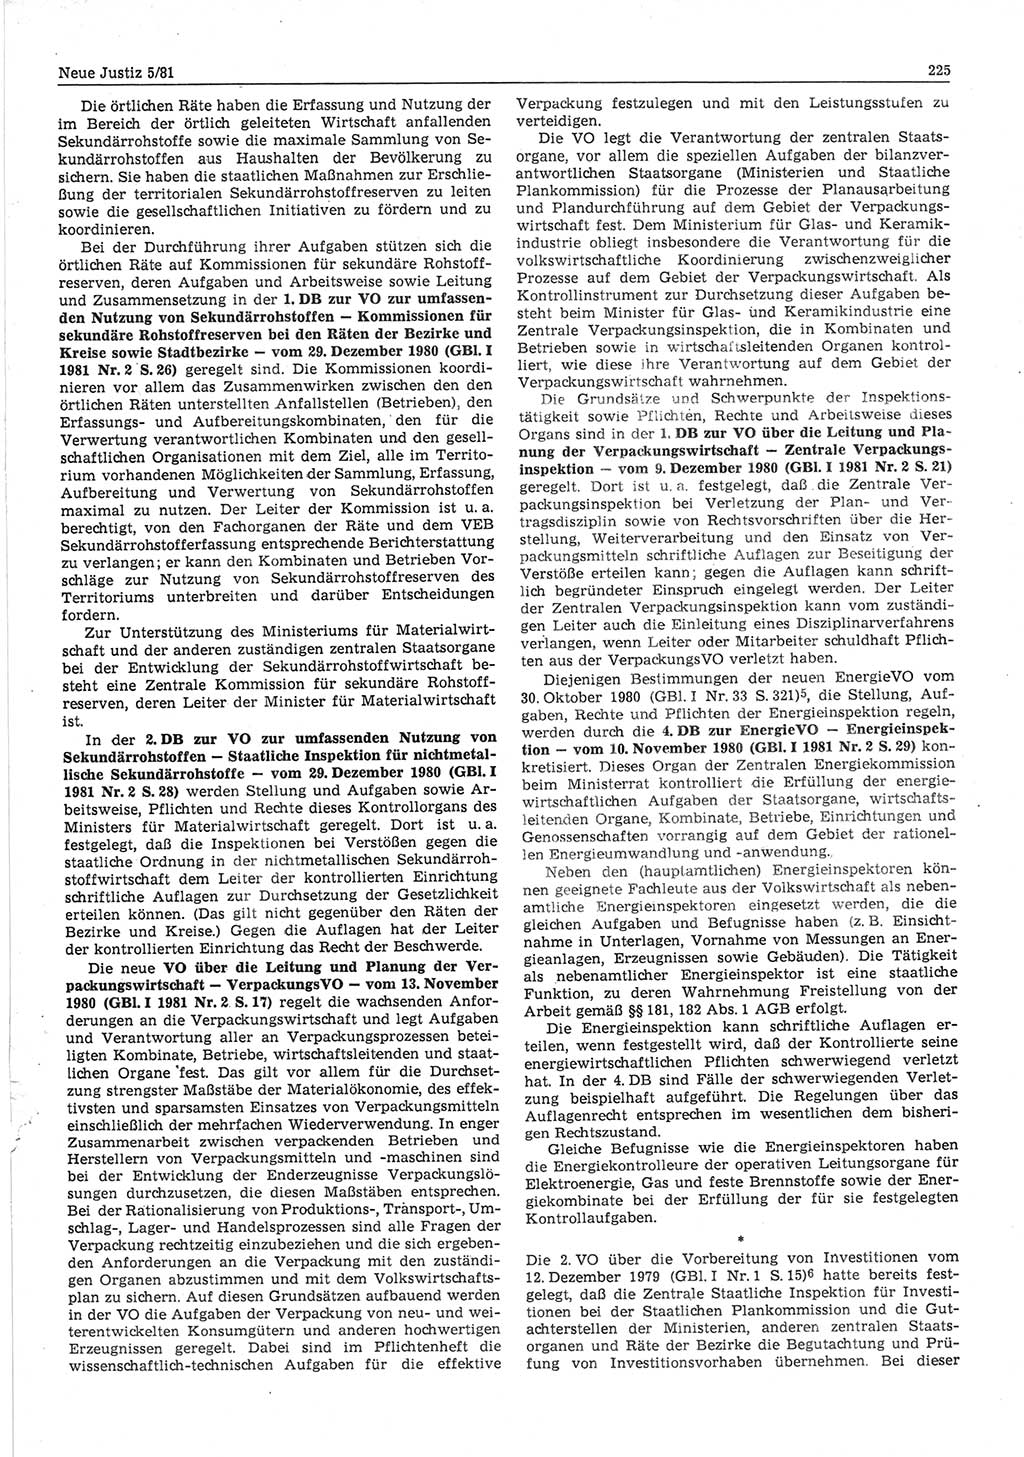 Neue Justiz (NJ), Zeitschrift für sozialistisches Recht und Gesetzlichkeit [Deutsche Demokratische Republik (DDR)], 35. Jahrgang 1981, Seite 225 (NJ DDR 1981, S. 225)